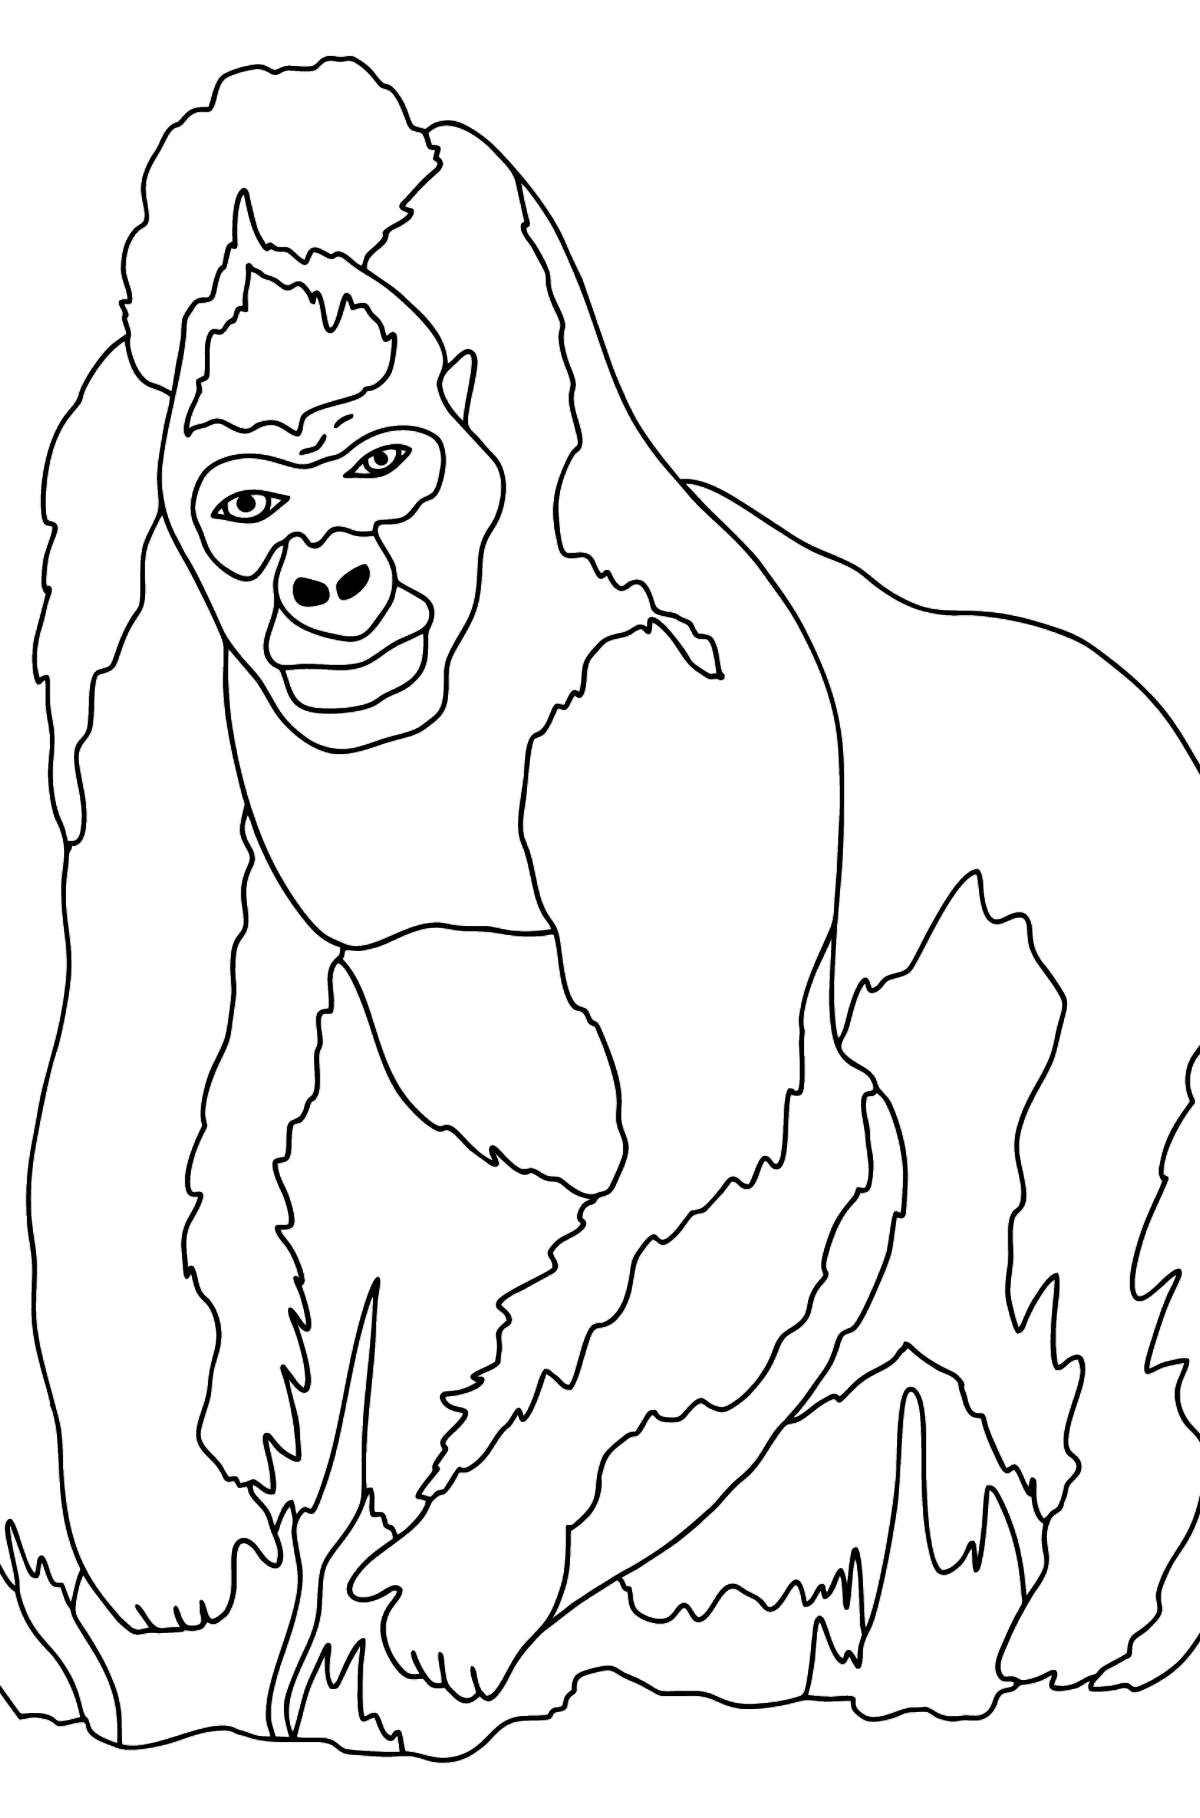 Ausmalbild - Ein behaarter Gorilla - Malvorlagen für Kinder